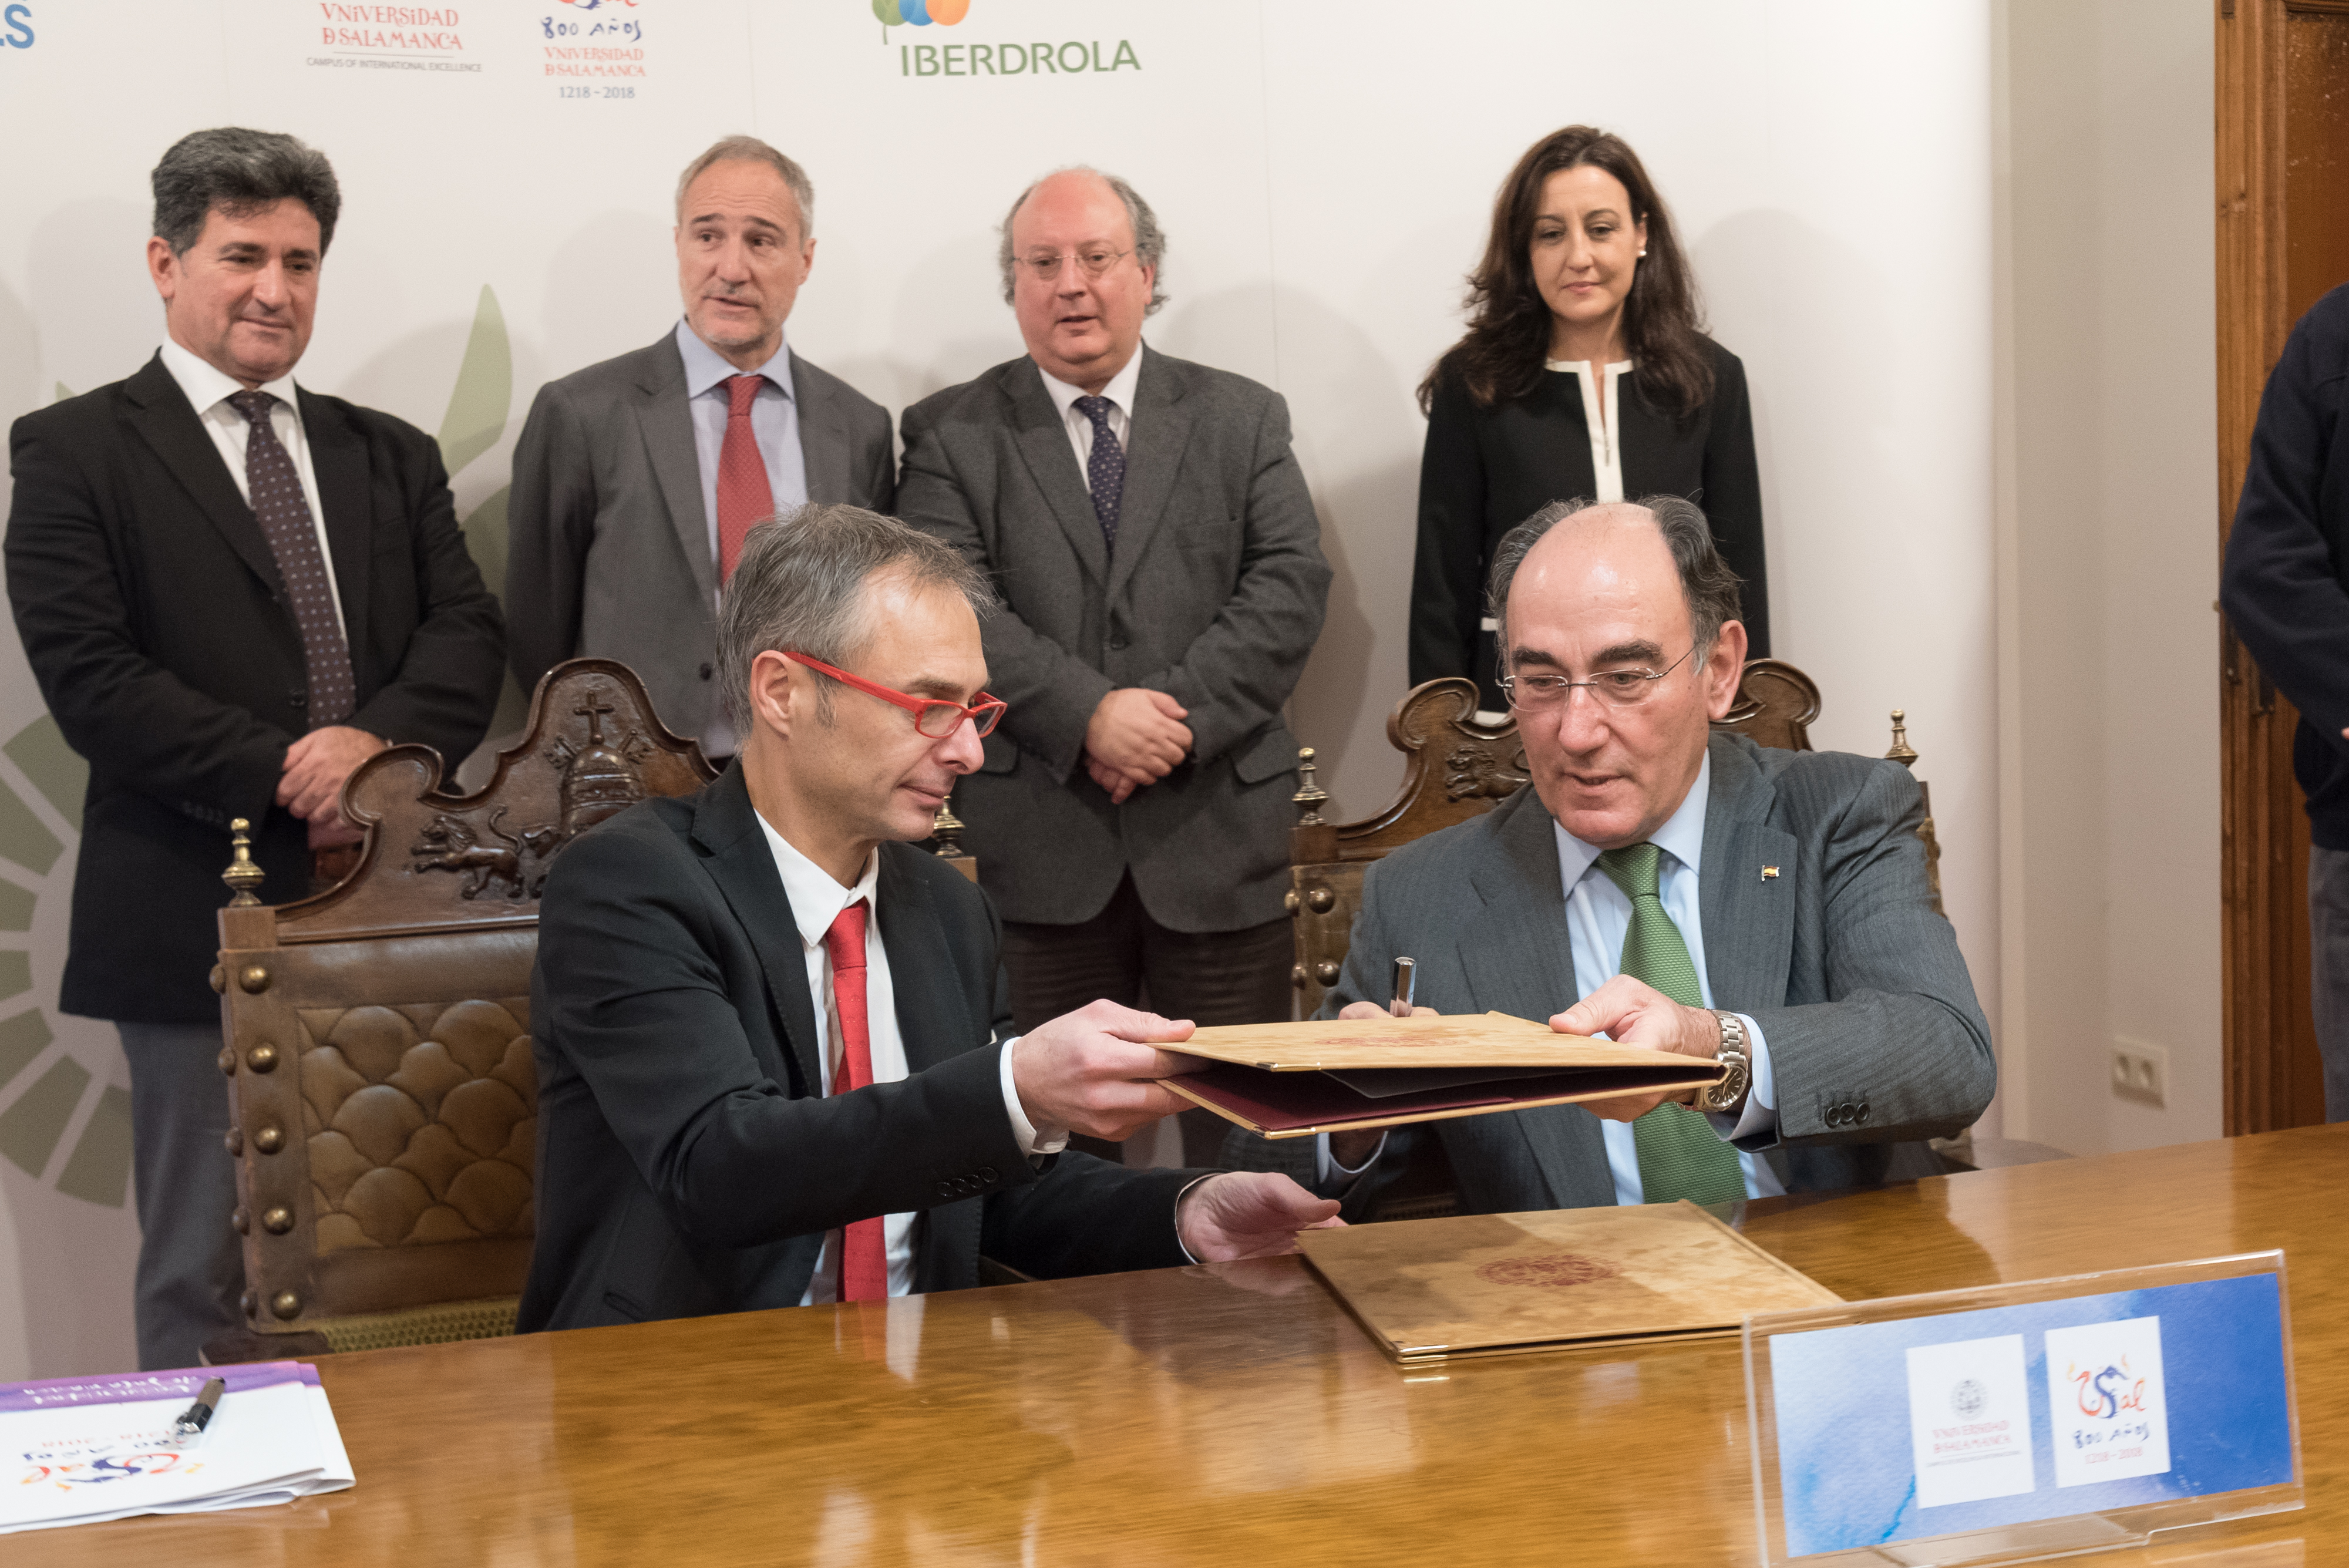 La Universidad de Salamanca e Iberdrola firman un acuerdo para la celebración de la Conferencia Iberoamericana sobre Objetivos de Desarrollo Sostenible